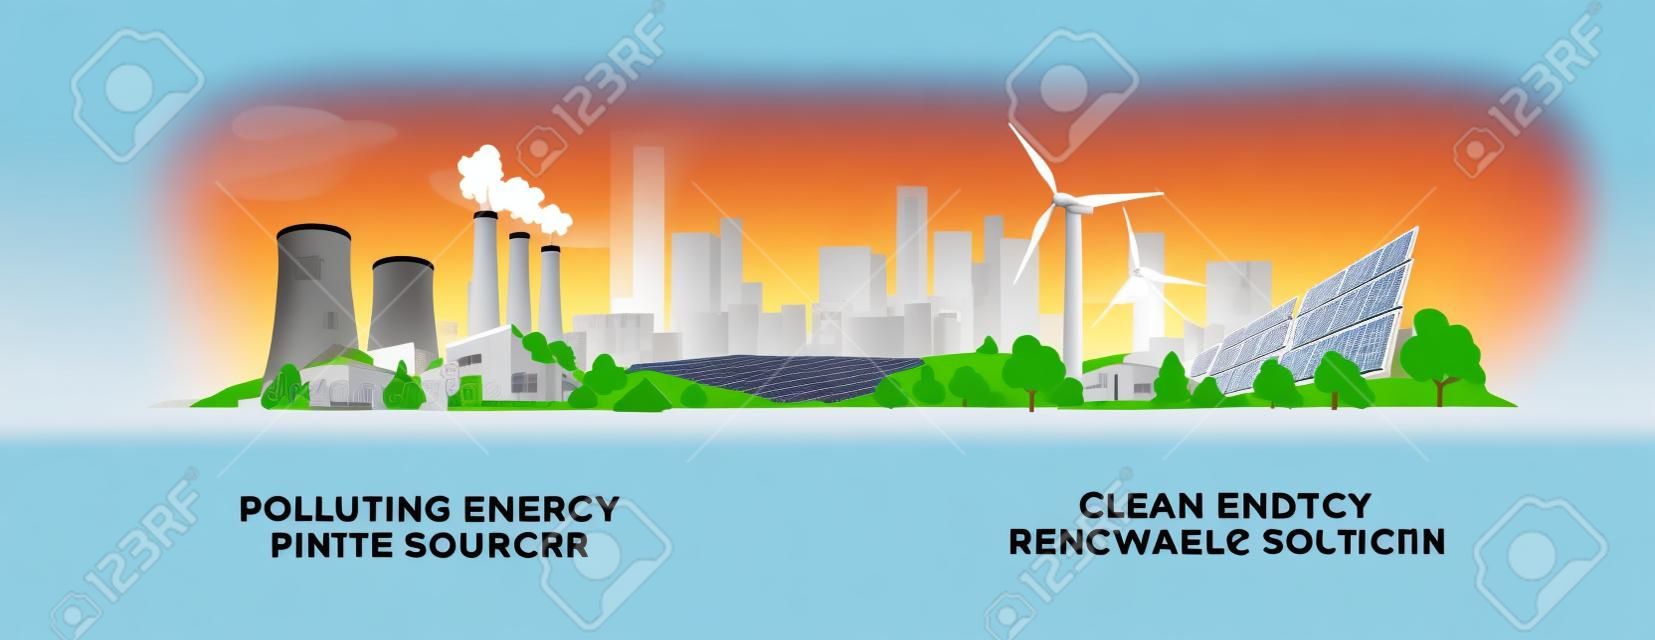 Ilustração do vetor que mostra a produção limpa e poluindo da geração de eletricidade. Usinas termelétricas a carvão fóssil e nucleares poluentes versus painéis solares limpos e energia renovável de turbinas eólicas.